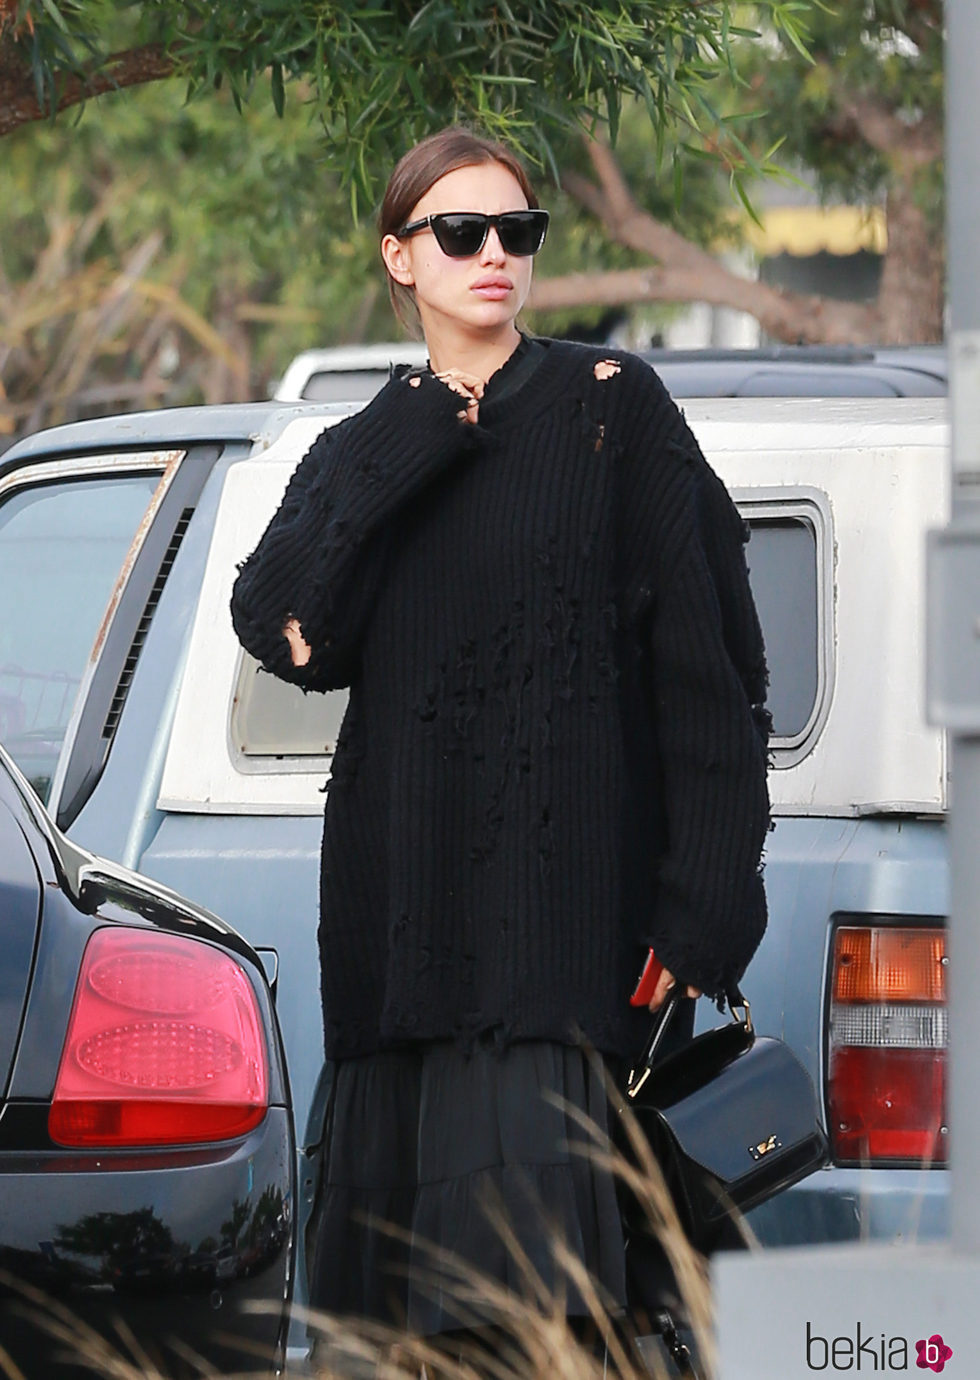 Irina Shayk con un jersey negro en Los Ángeles